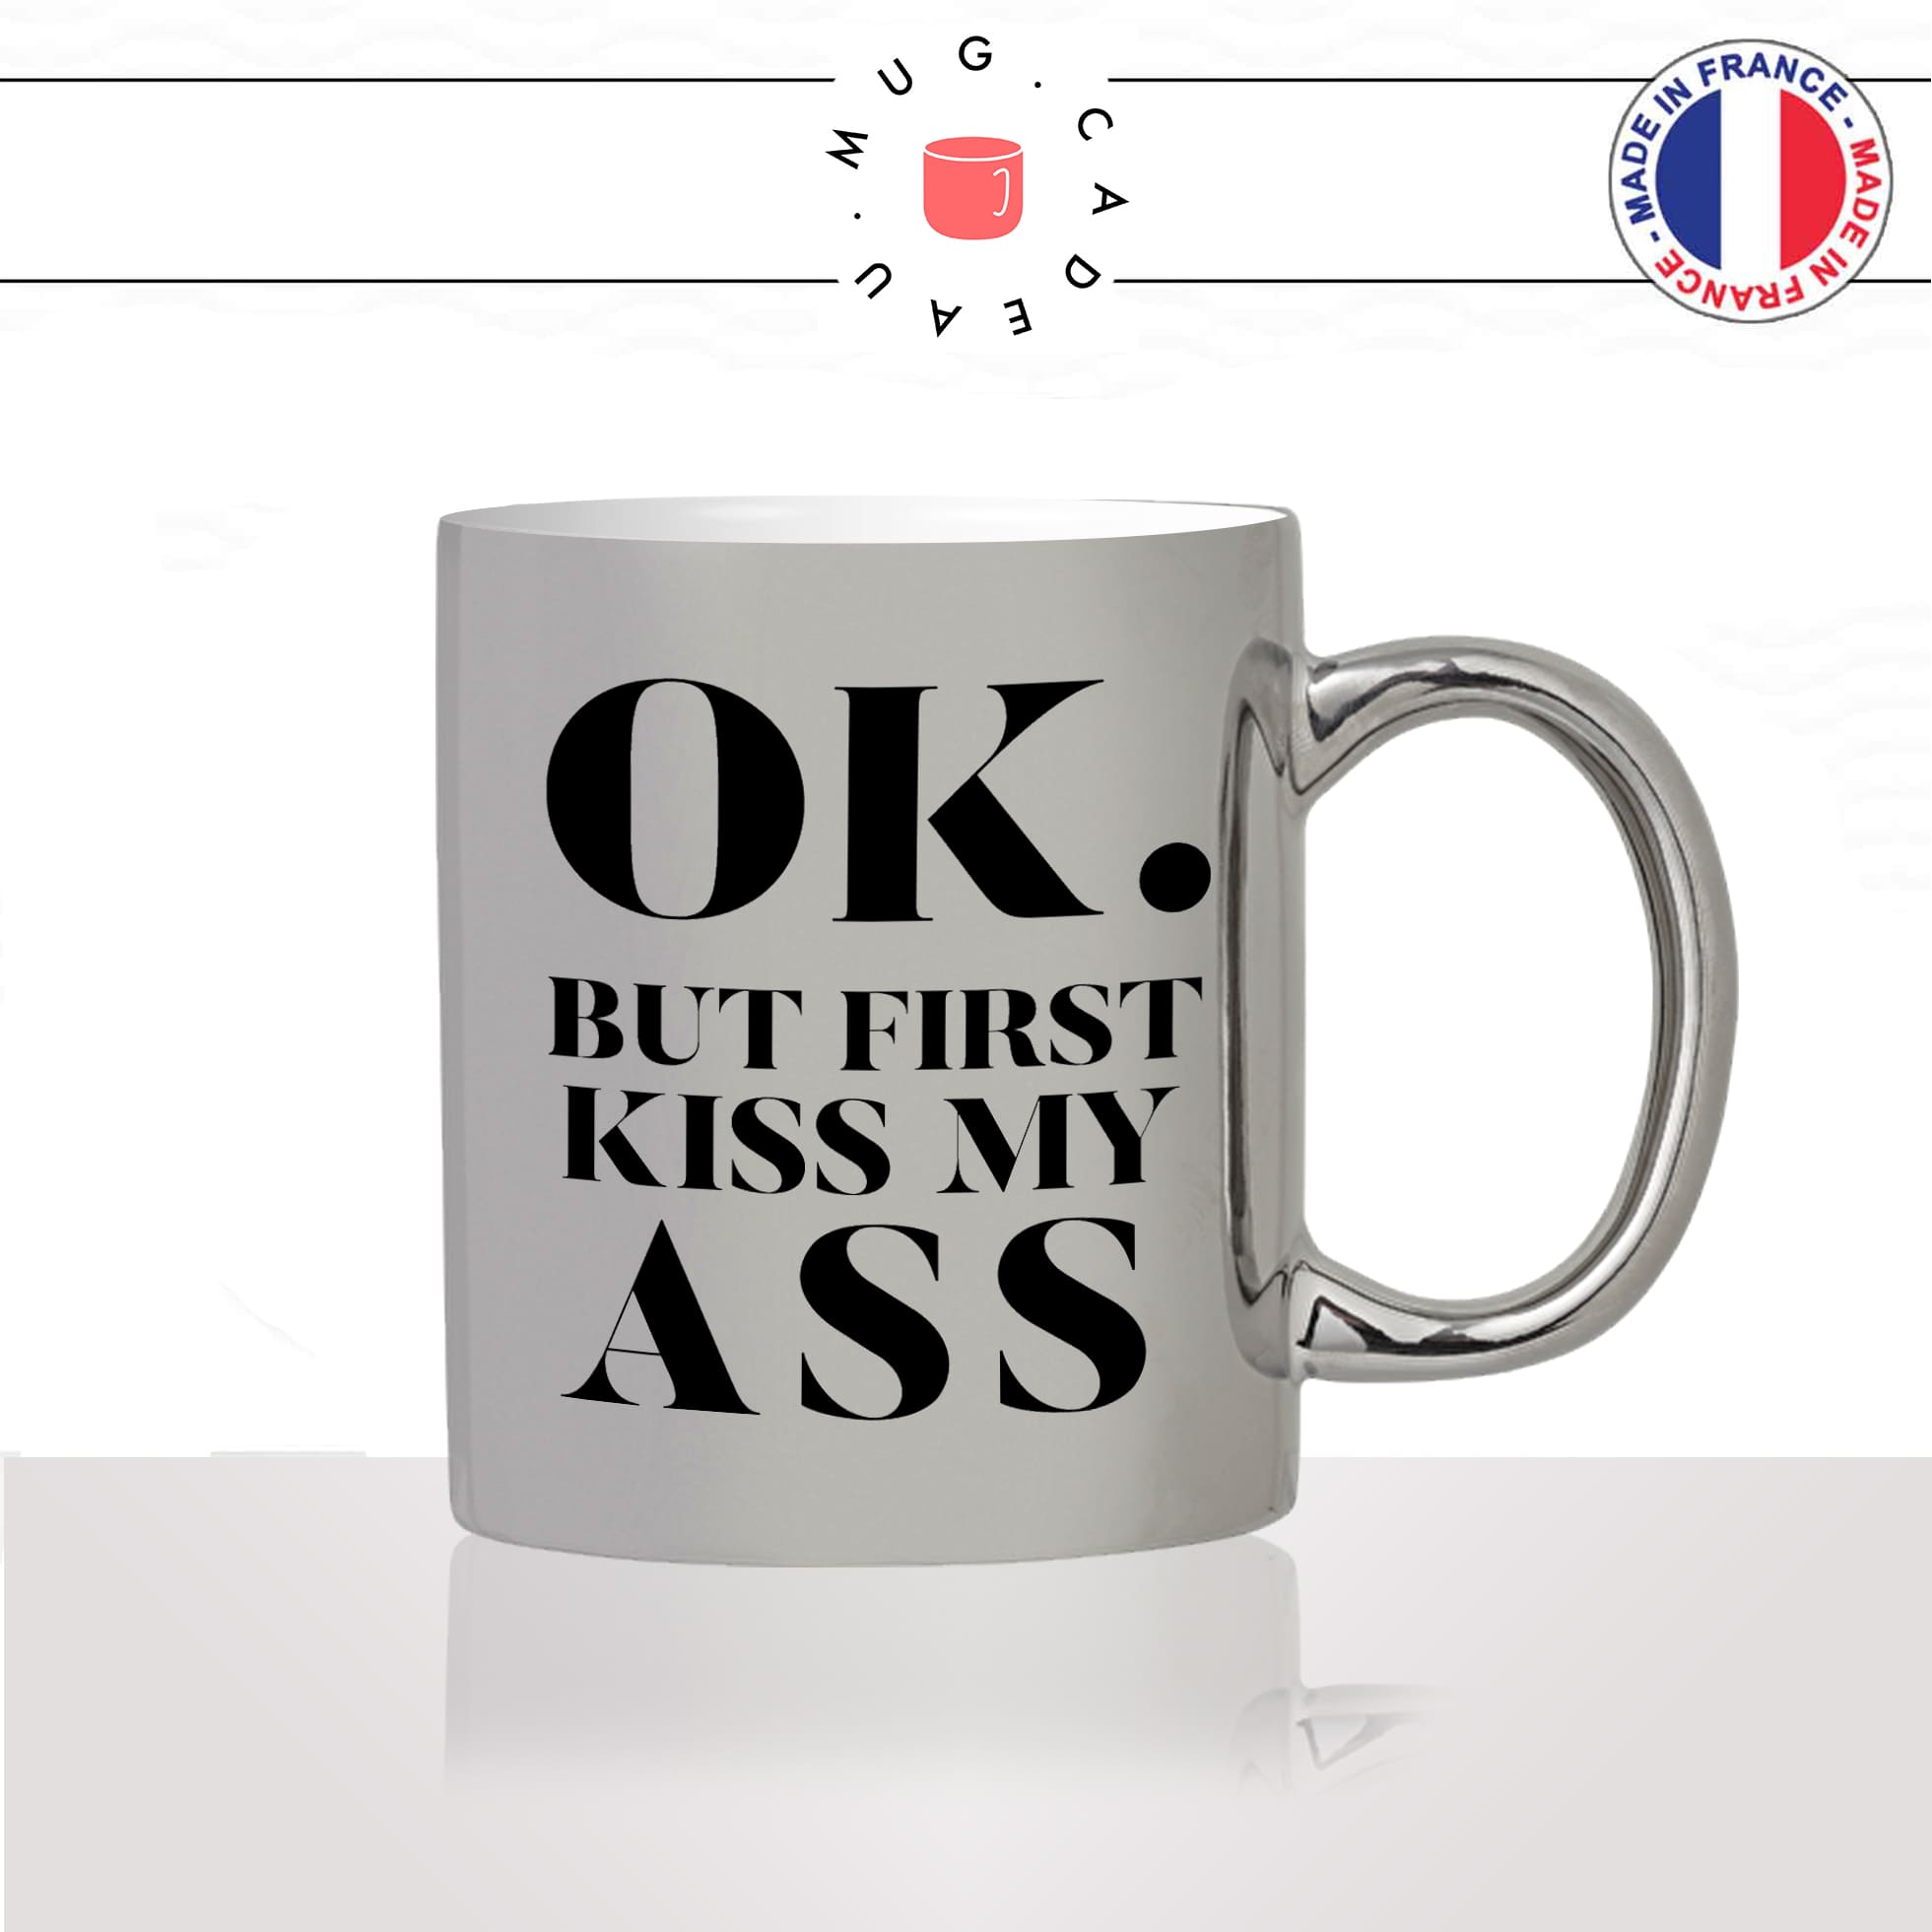 mug-tasse-argenté-argent-gris-silver-ok-but-first-kiss-my-ass-mon-cul-homme-femme-drole-humour-fun-cool-idée-cadeau-original-personnalisé2